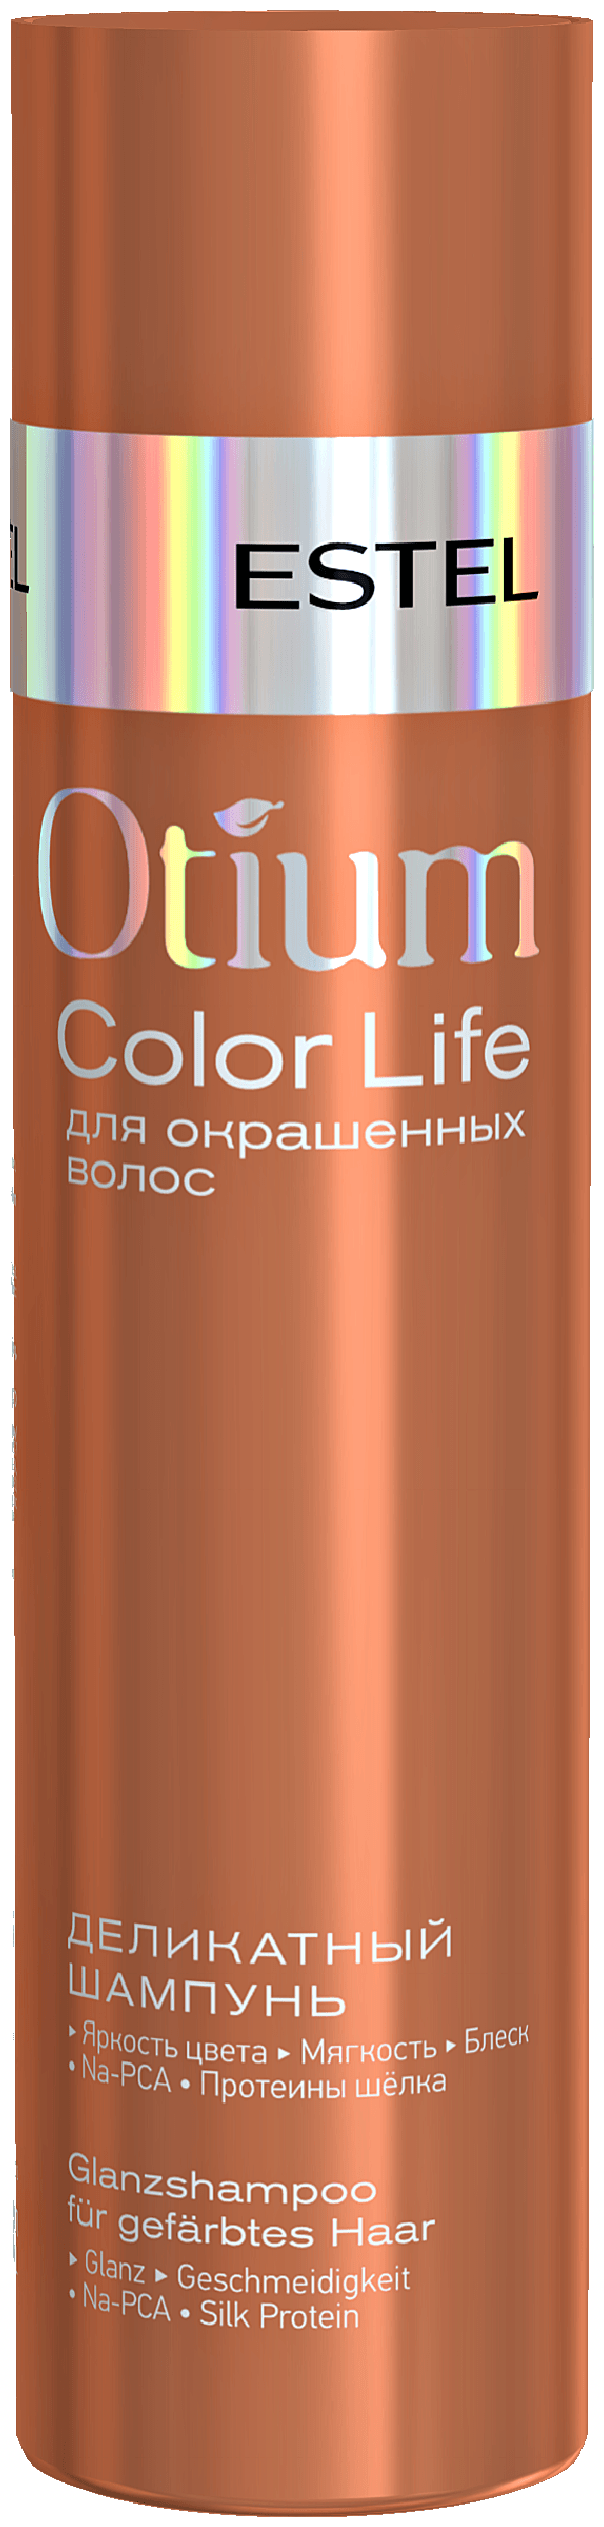 Шампунь ESTEL деликатный для окрашенных волос Otium Color life 250 мл